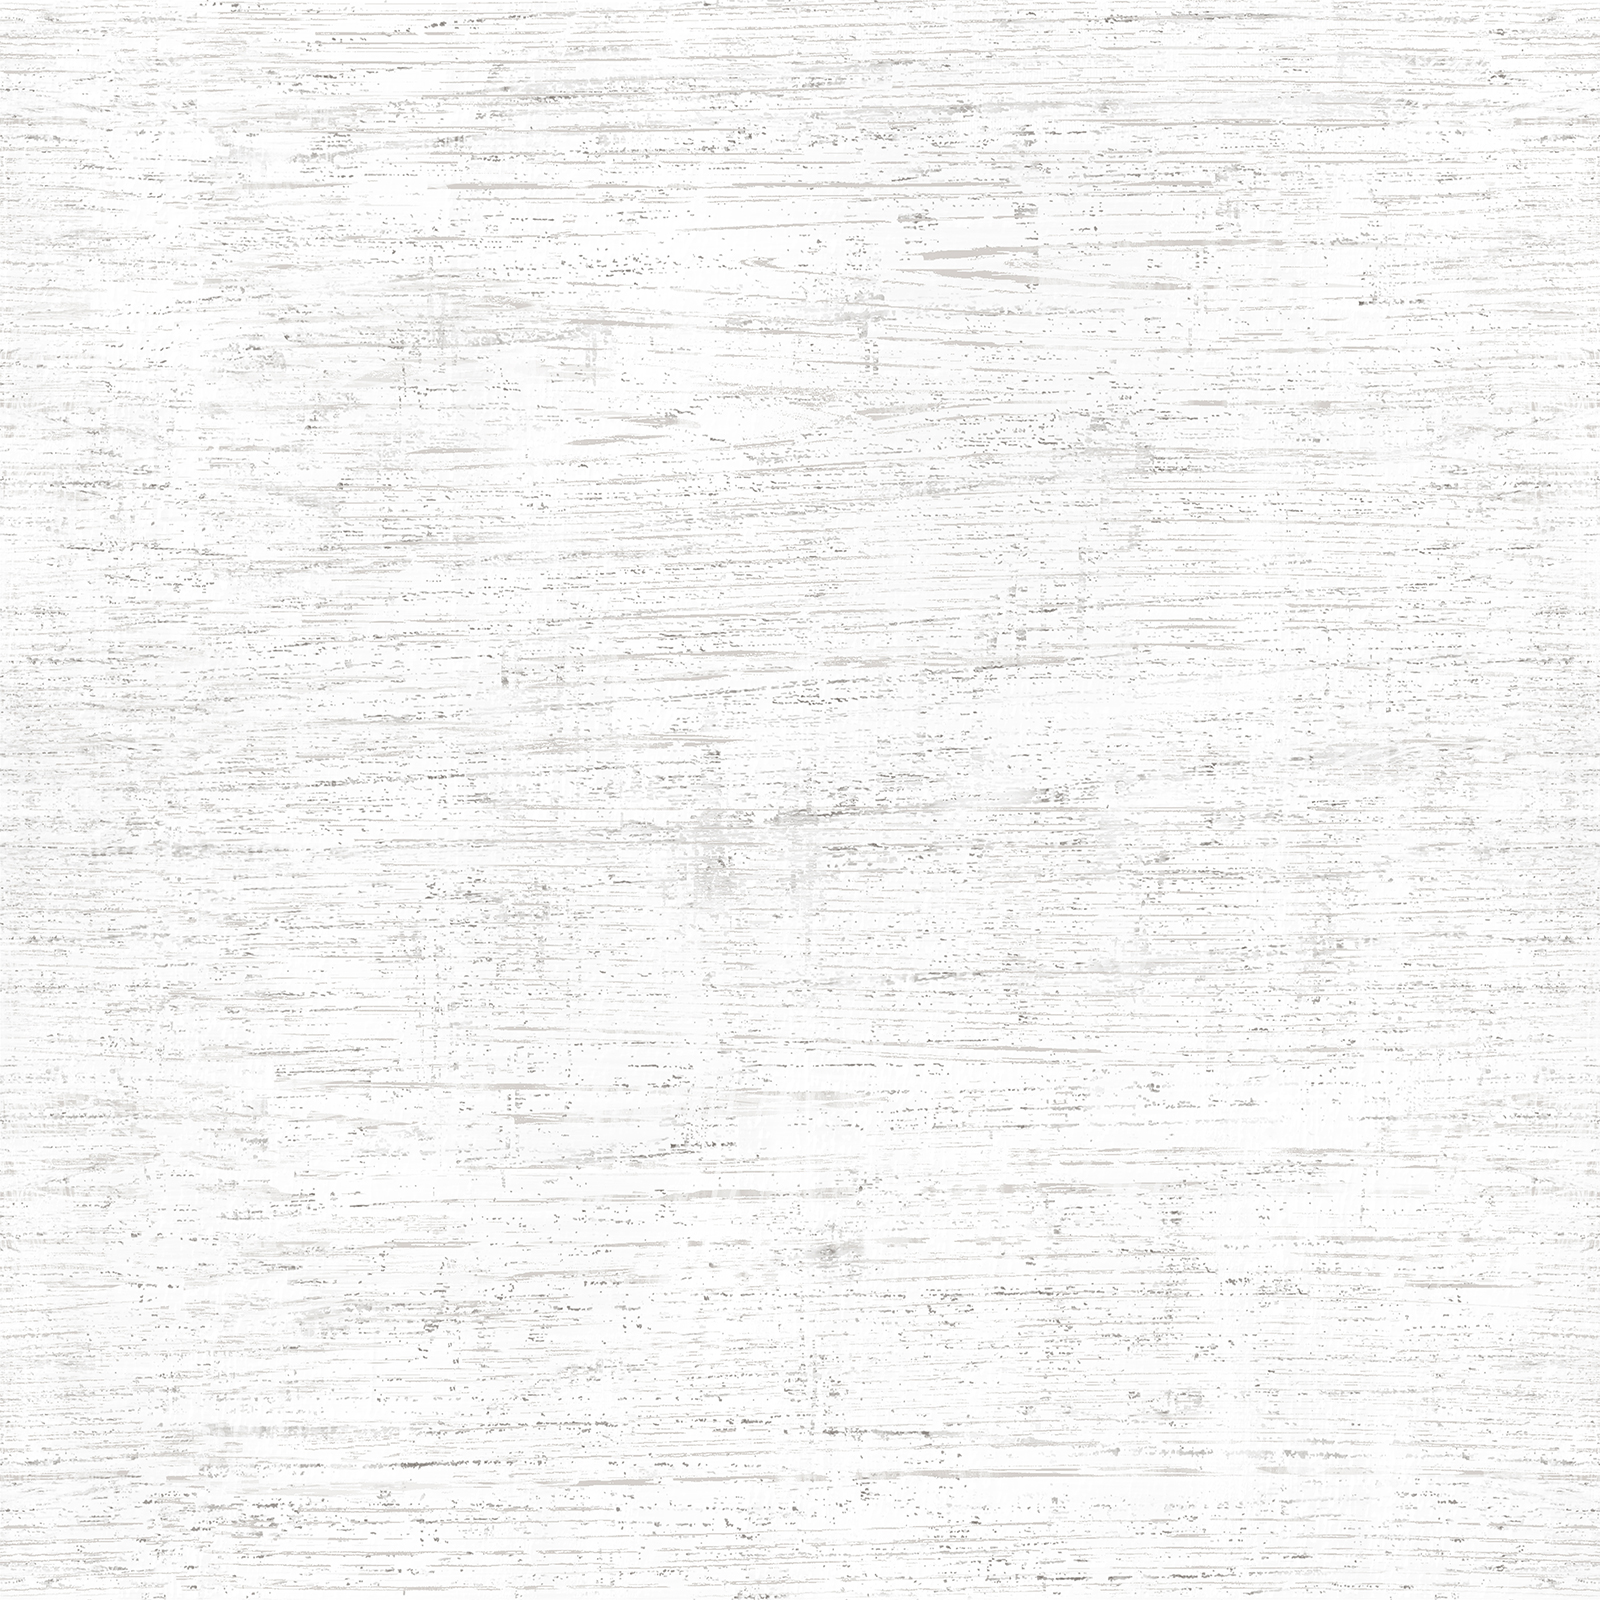 Керамическая плитка Wood White FT3WOD00  Керамогранит 410*410 (11 шт в уп/74 м в пал) / коллекция Wood White AltaCera / производитель AltaCera / страна Россия